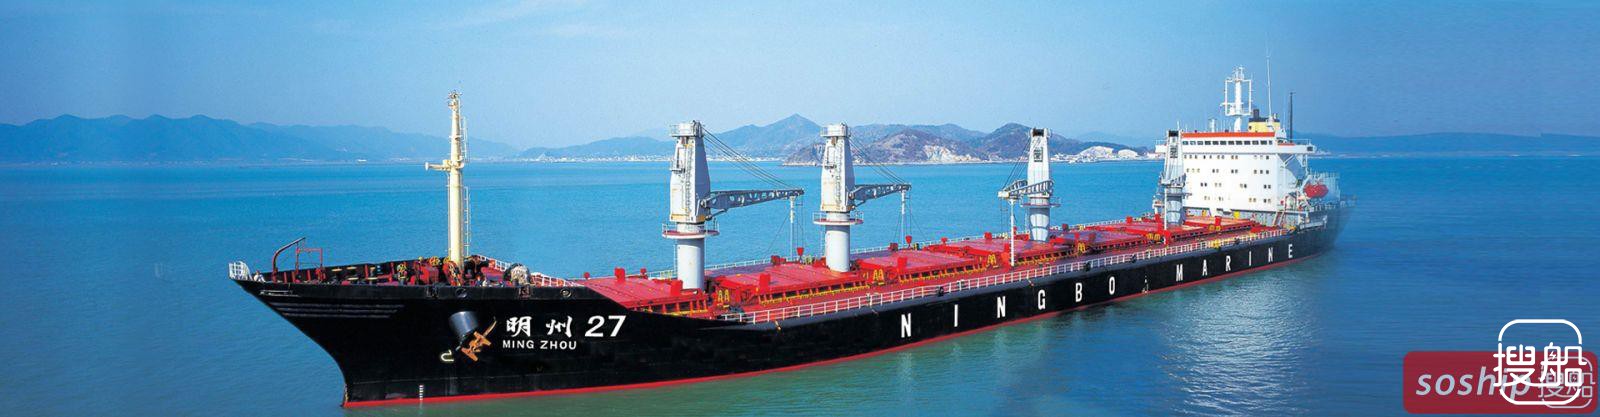 具有一定竞争力的宁波海运 半年净赚5770万